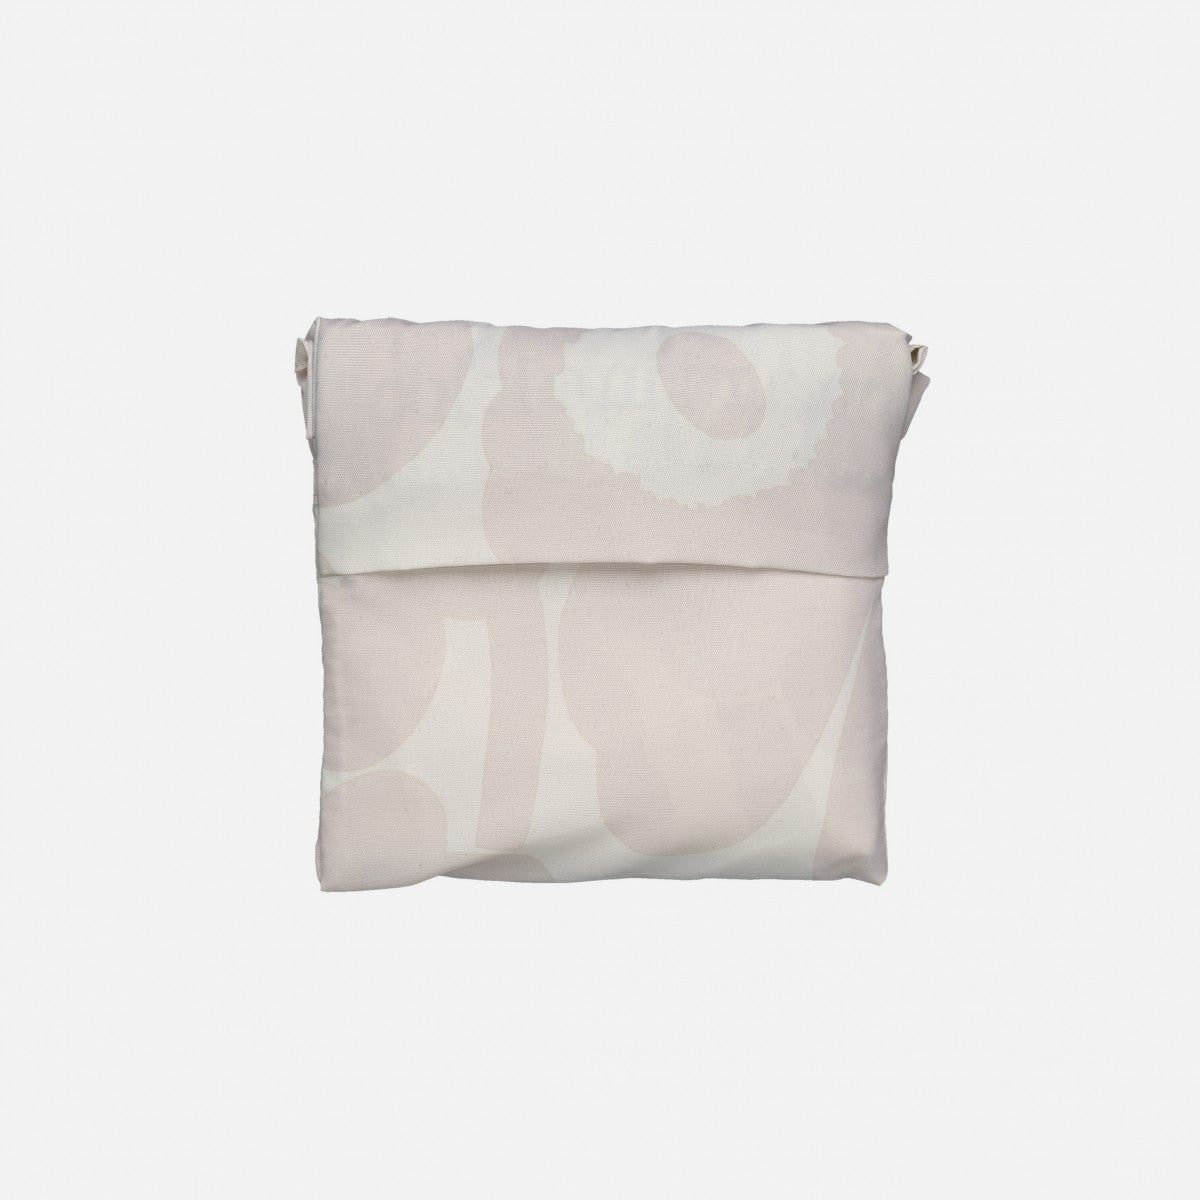 Marimekko Foldable Smart Bags -8 colours